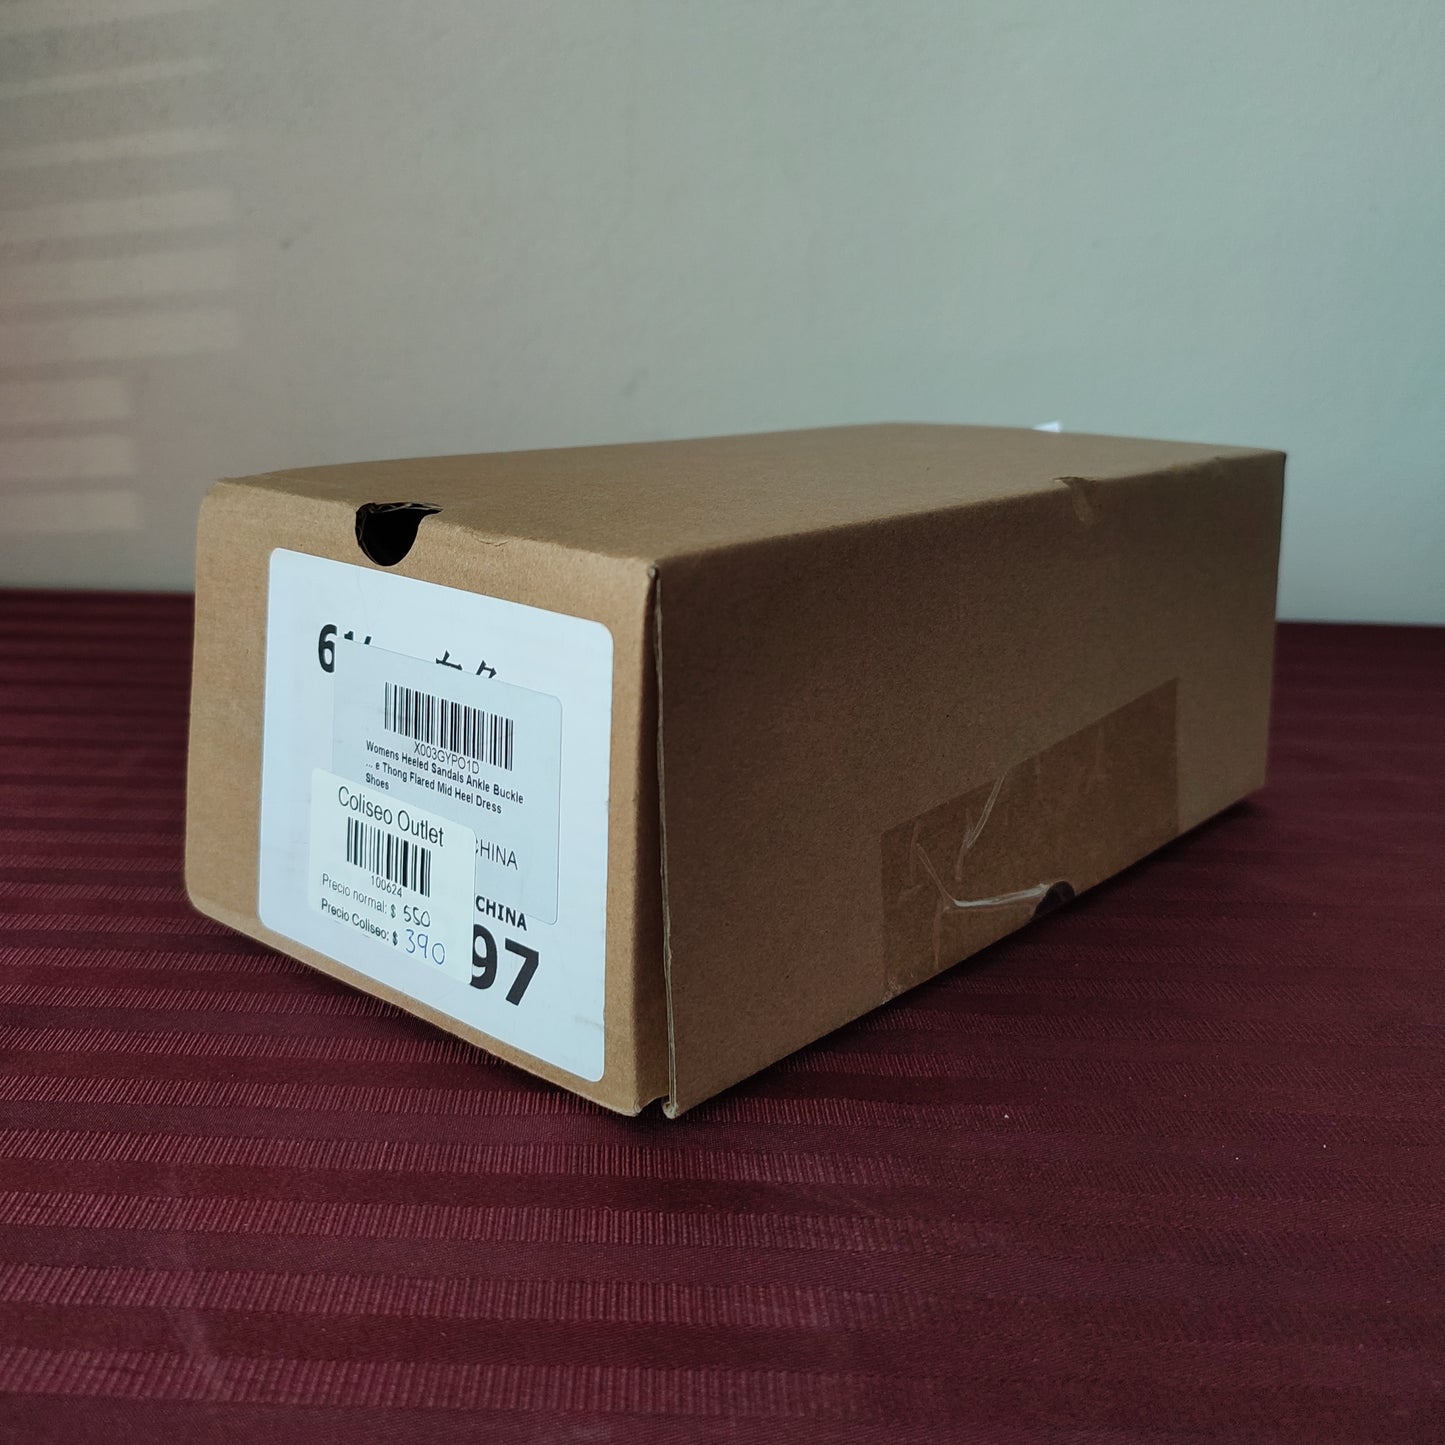 Zapatillas color blanco talla 6 1/2 US (23.5 cm) - (Nuevo)